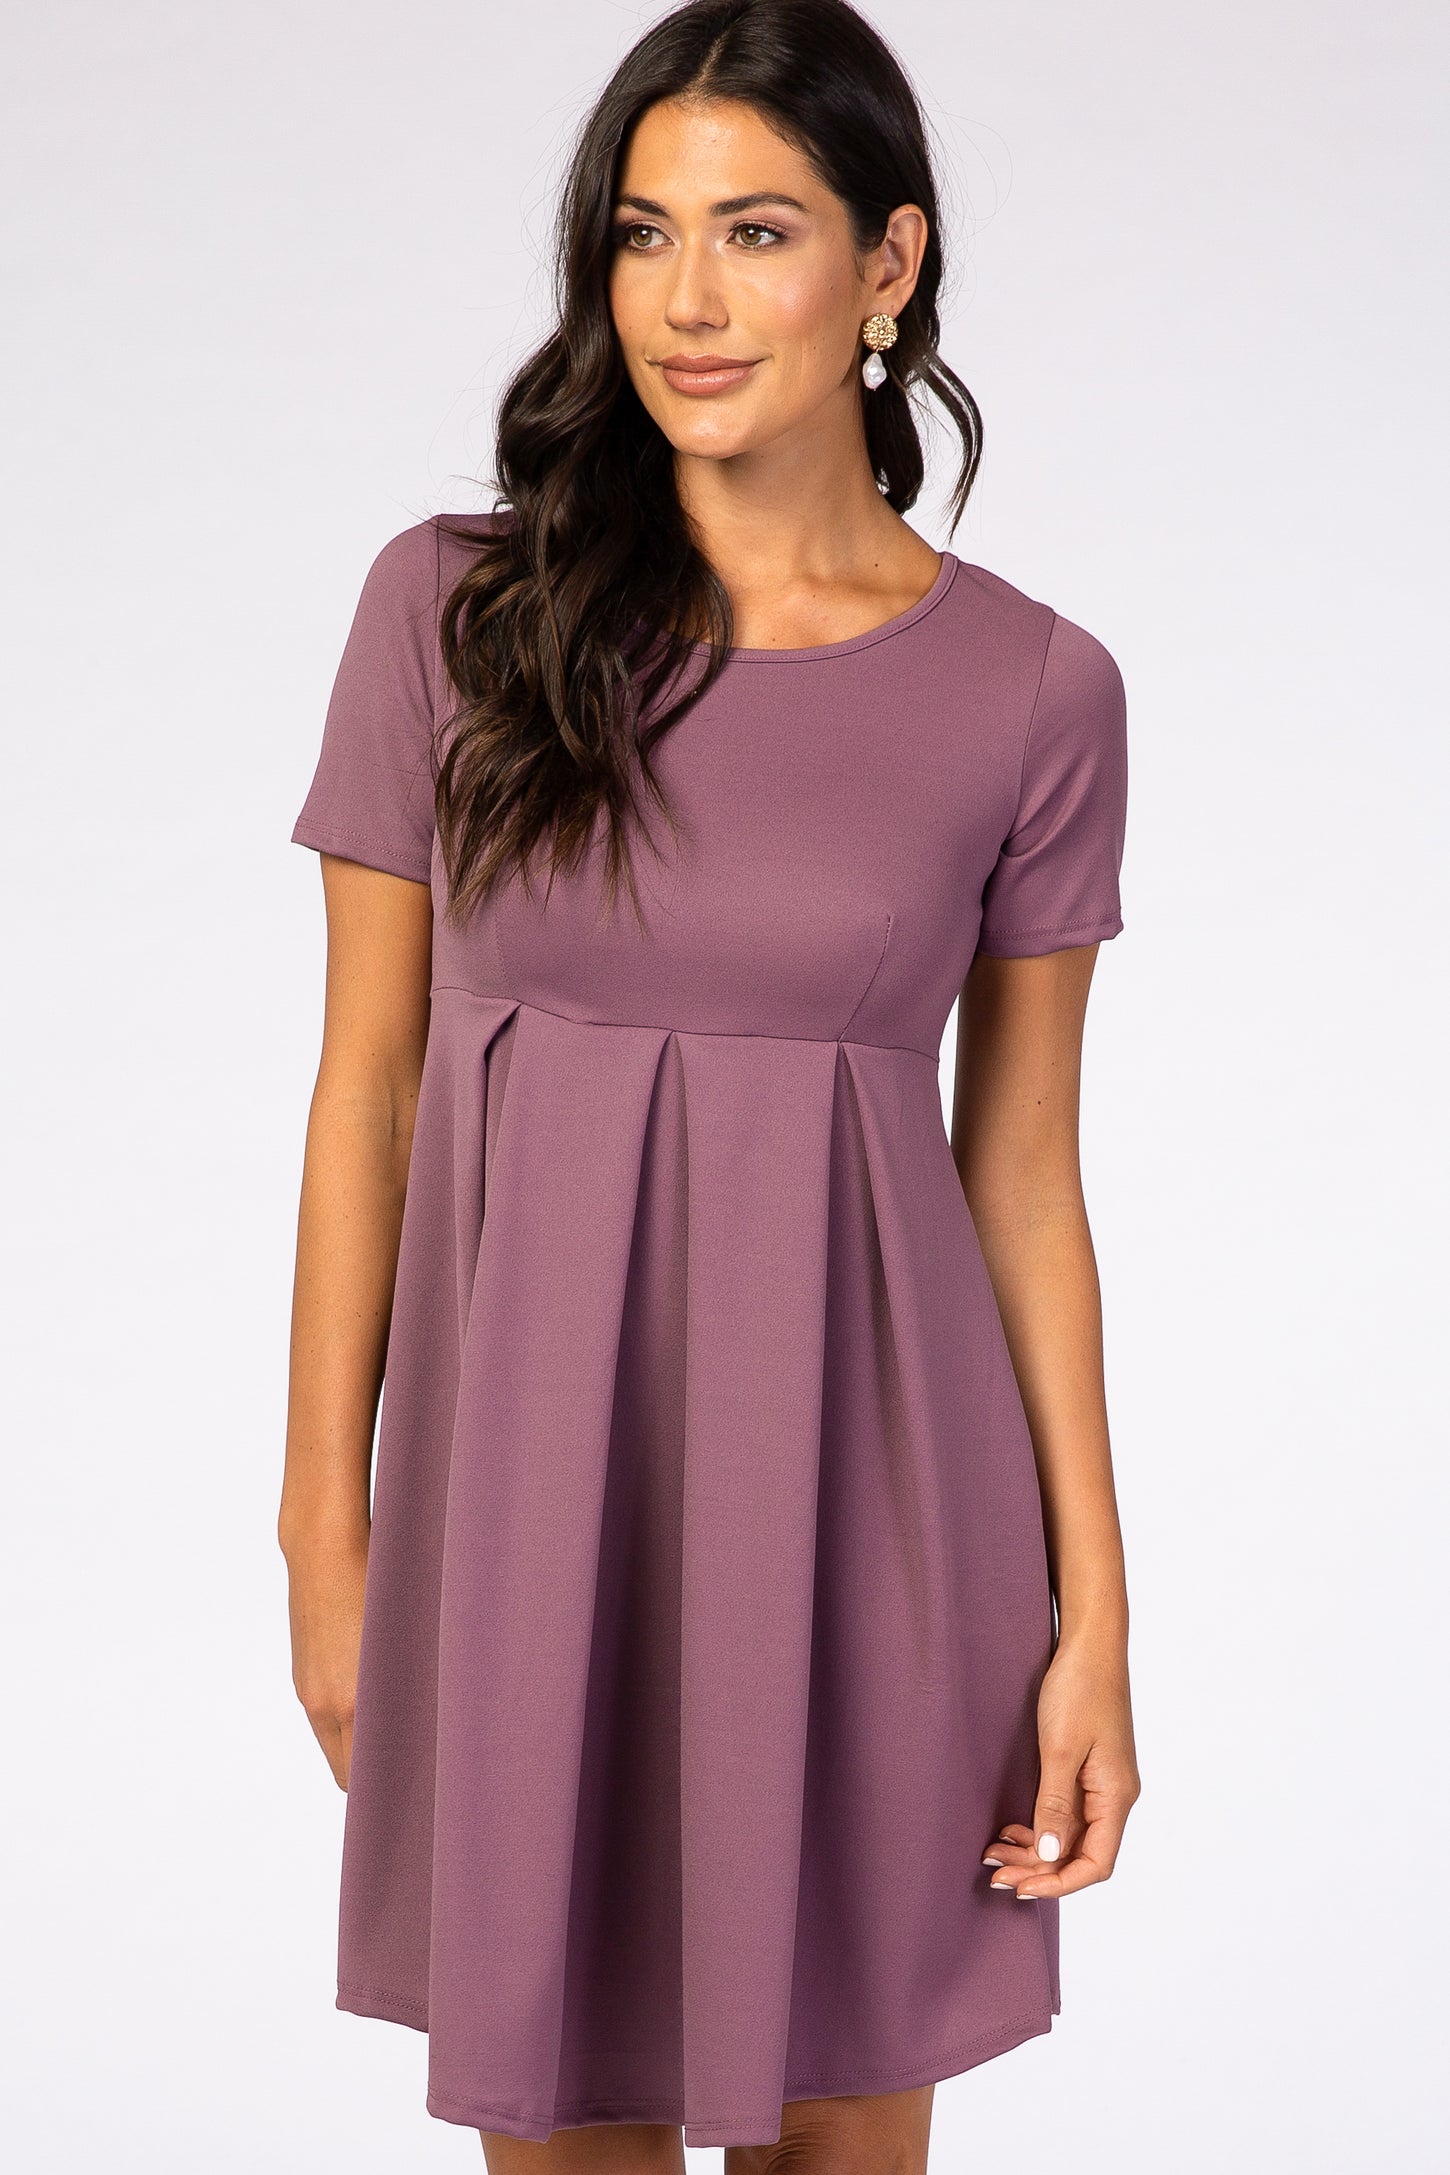 Purple Short Sleeve Front Pleat Dress